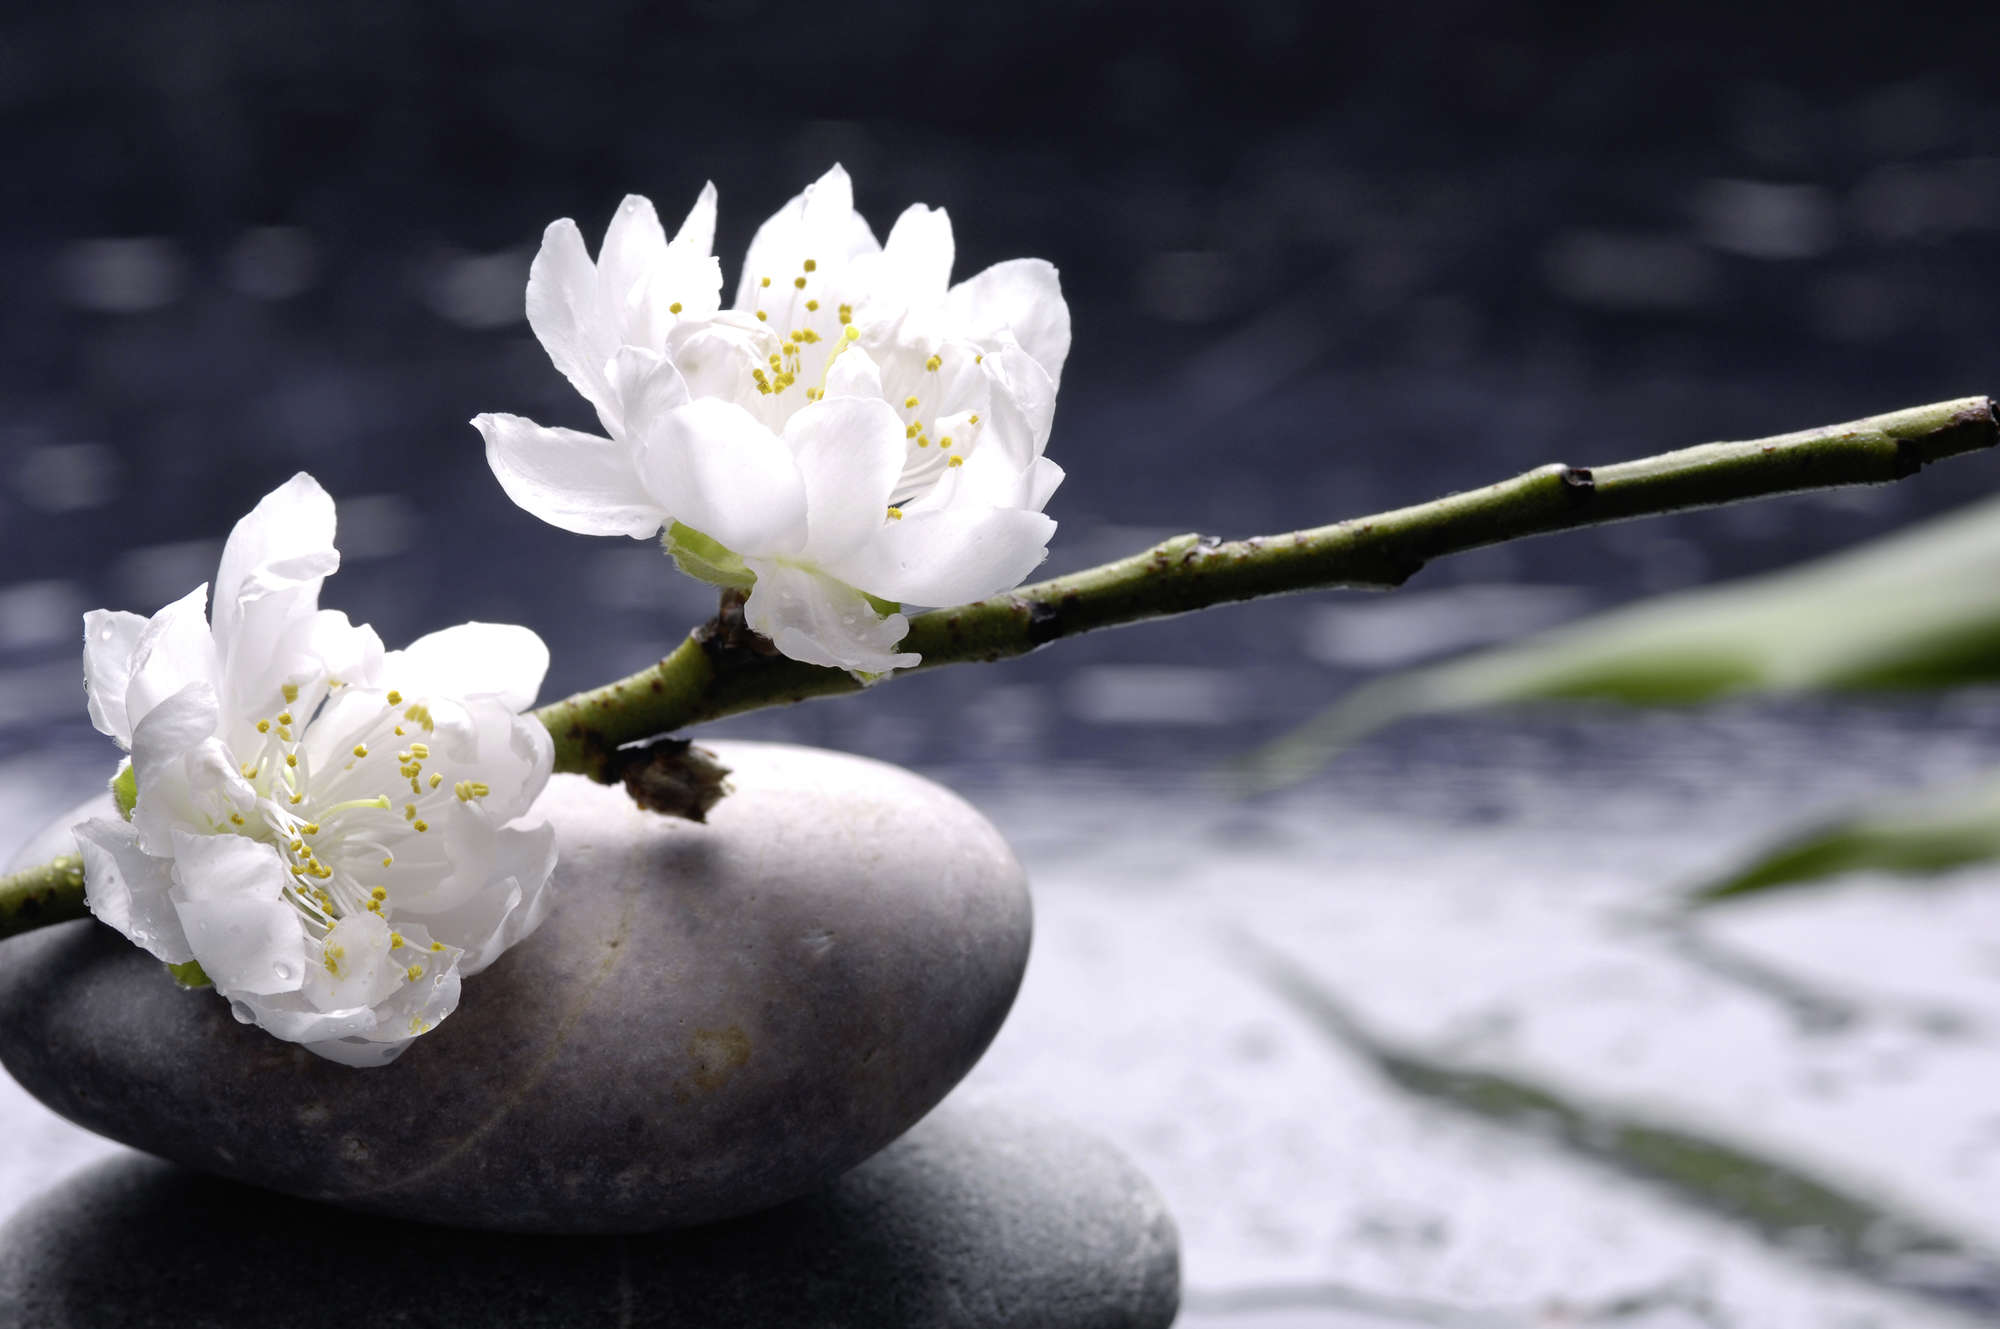             Spa behang witte bloemen op stenen op parelmoer glad vlies
        